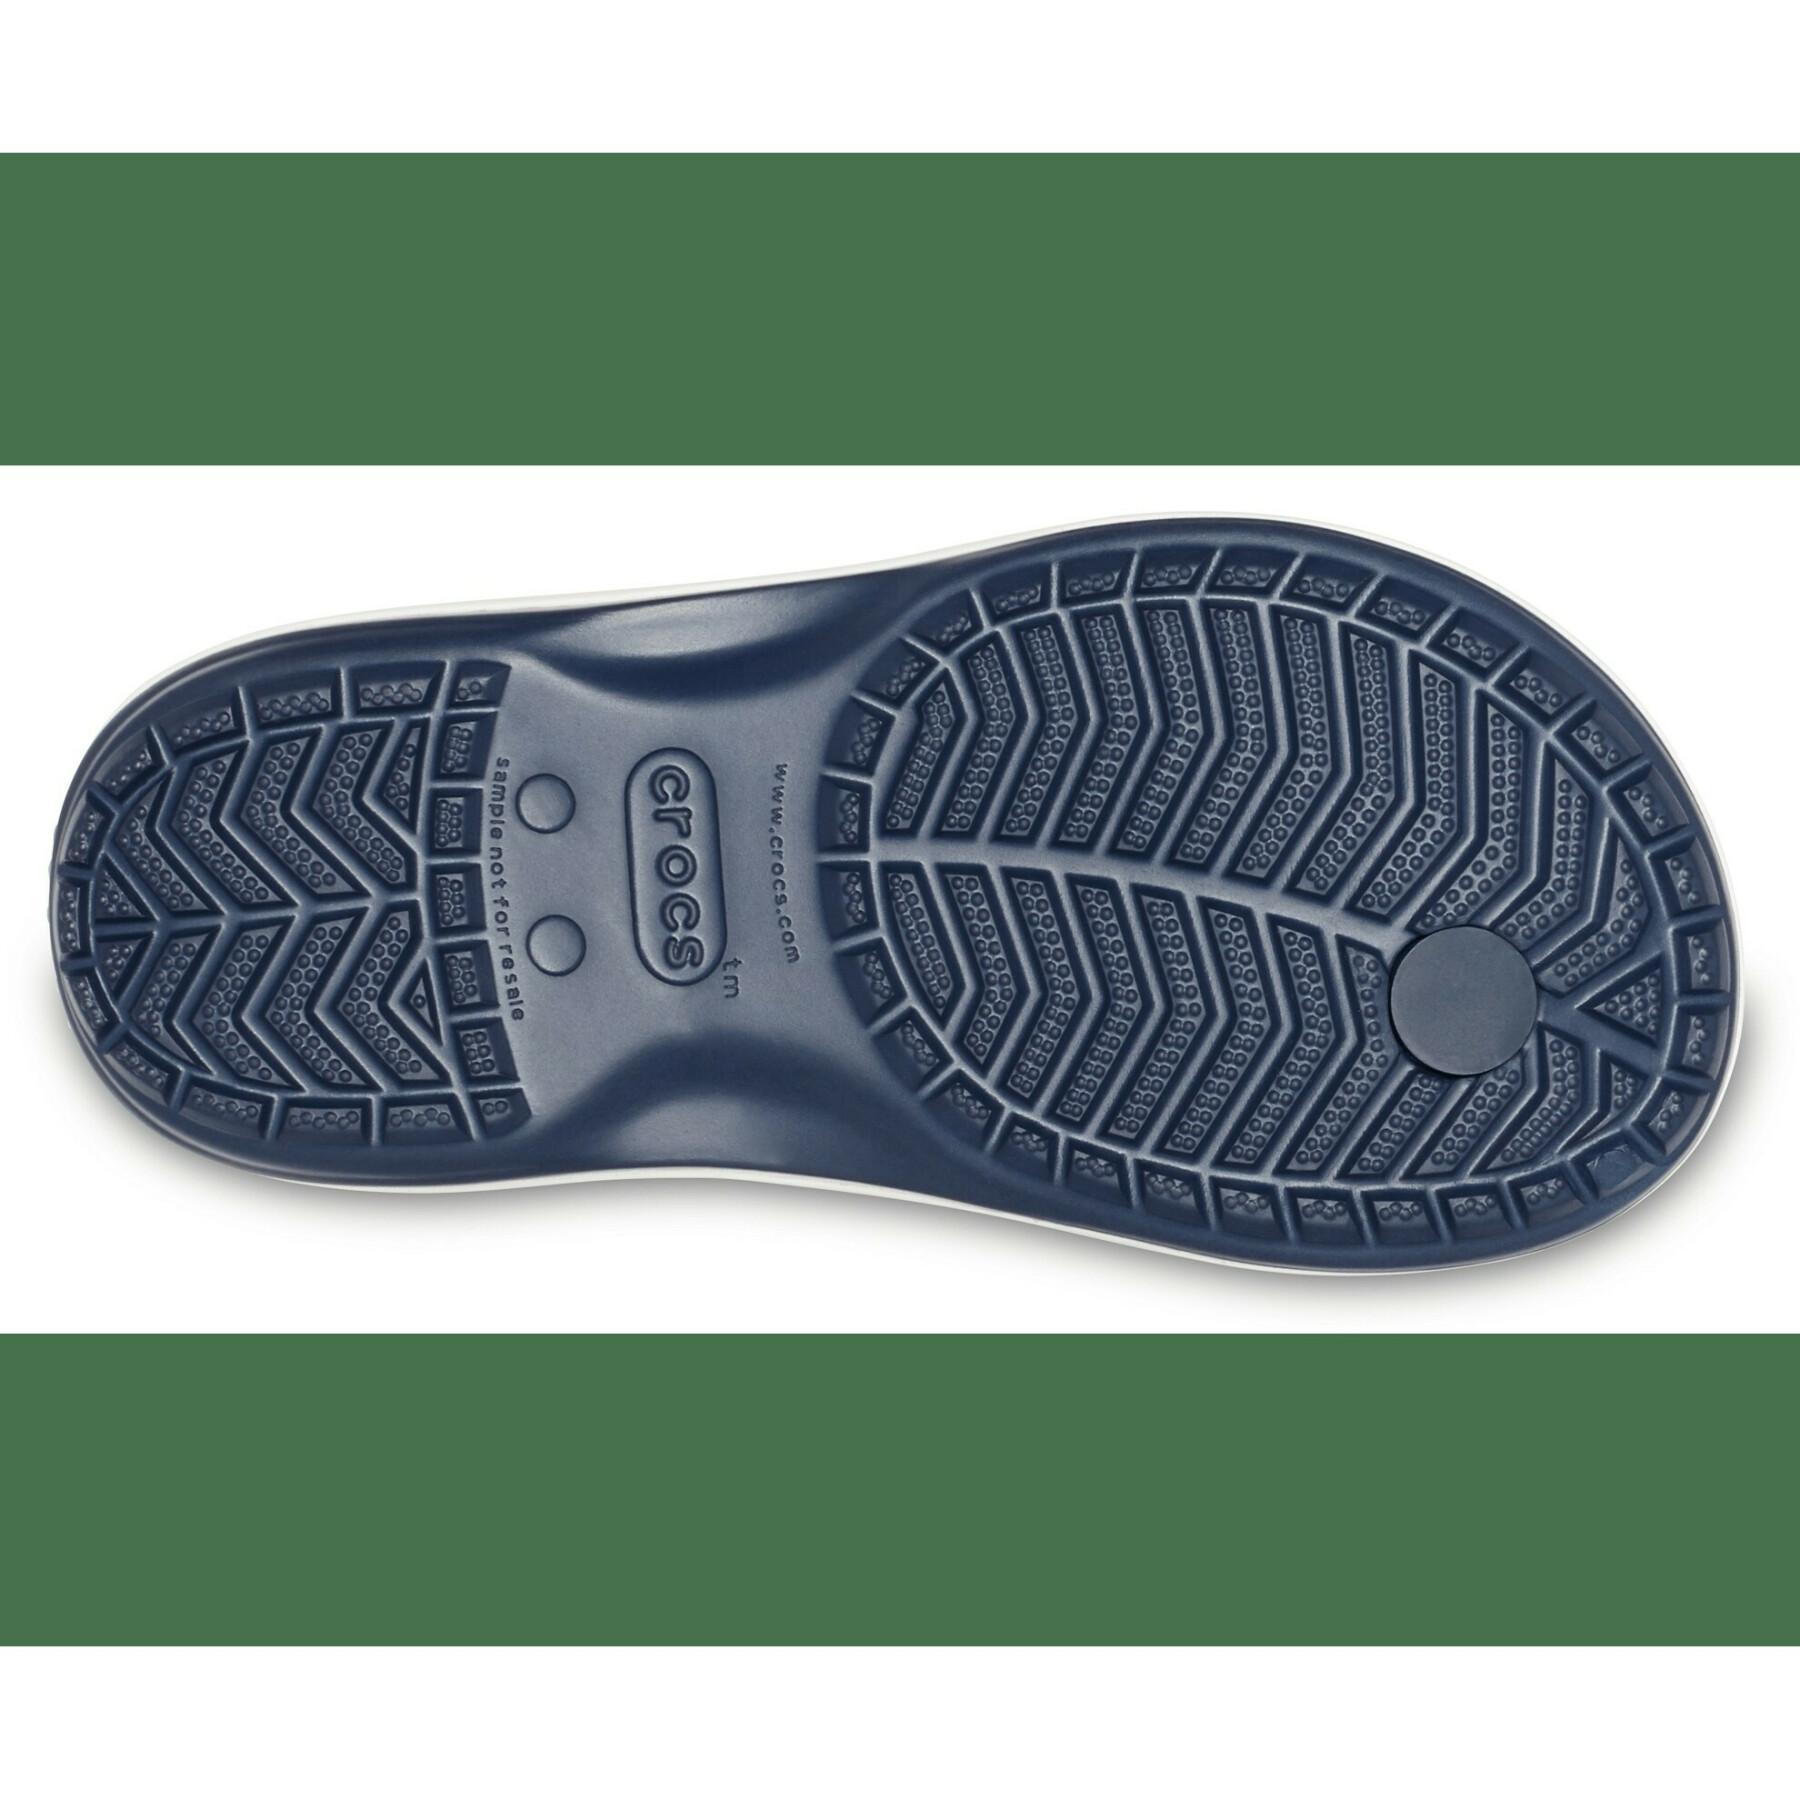 Children's flip-flops Crocs strap flip